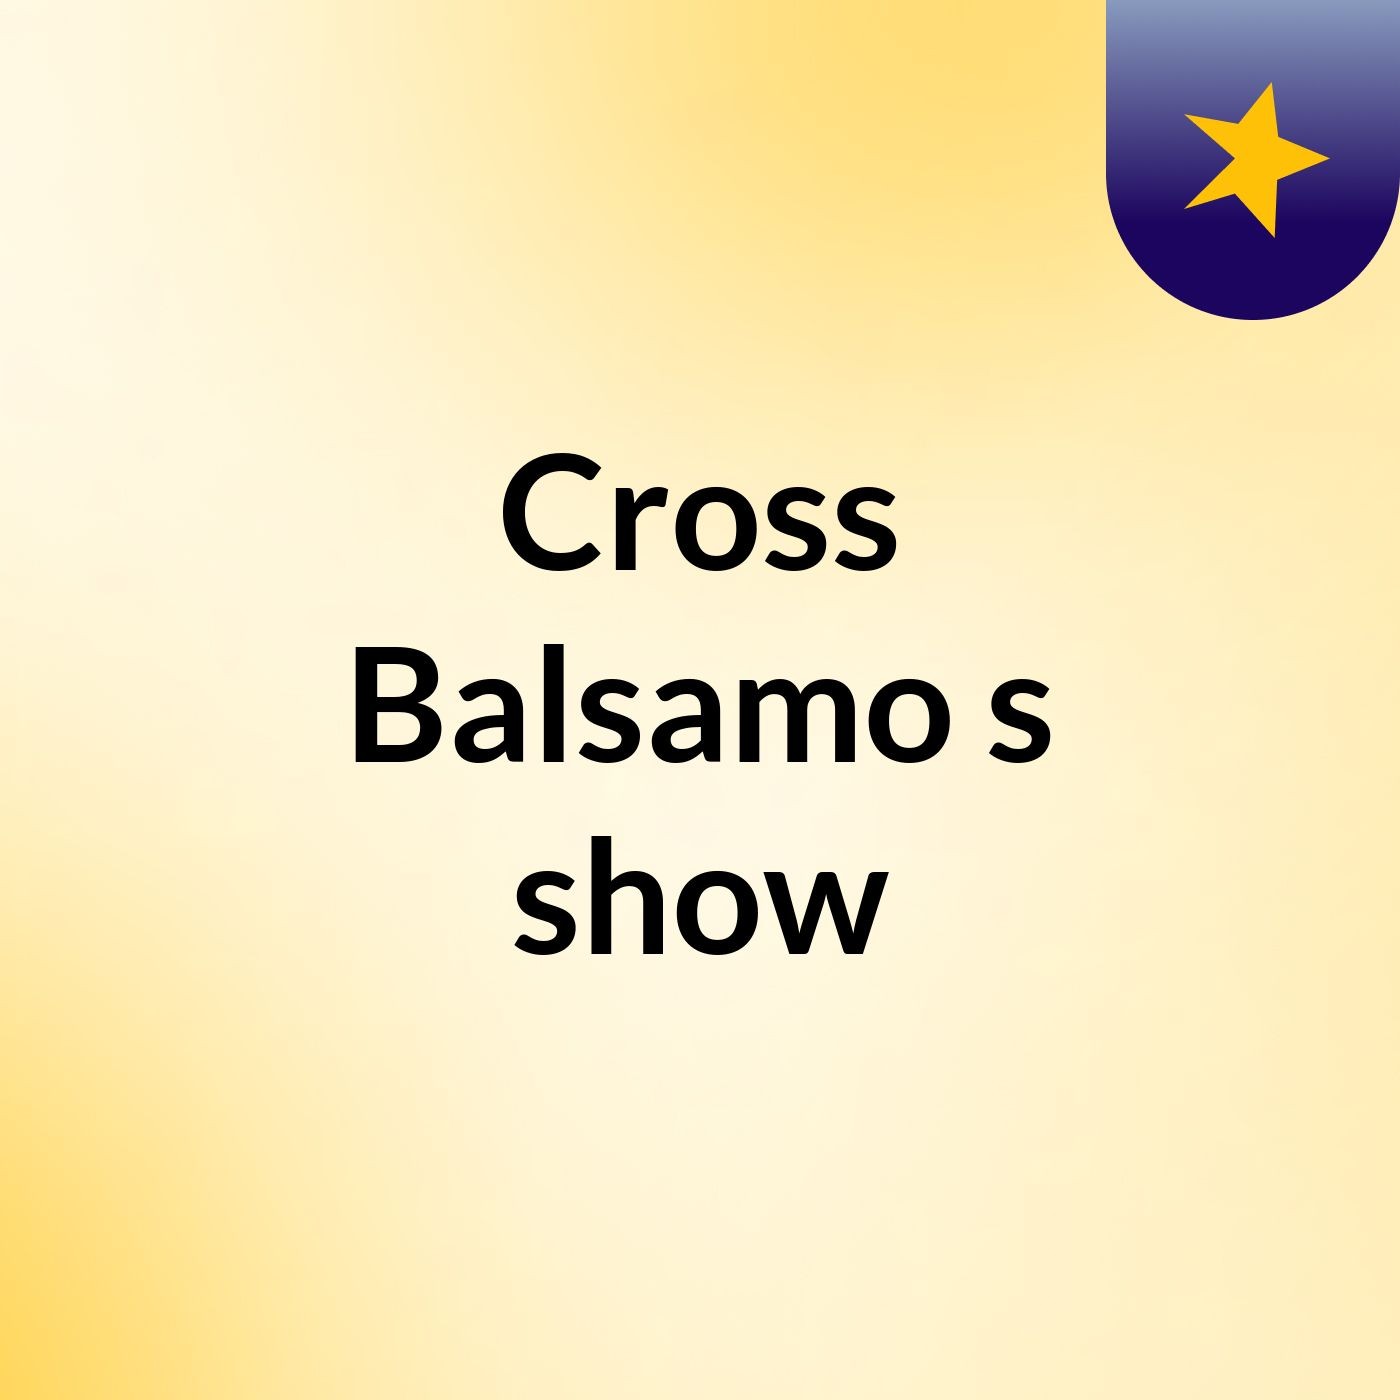 Cross Balsamo's show